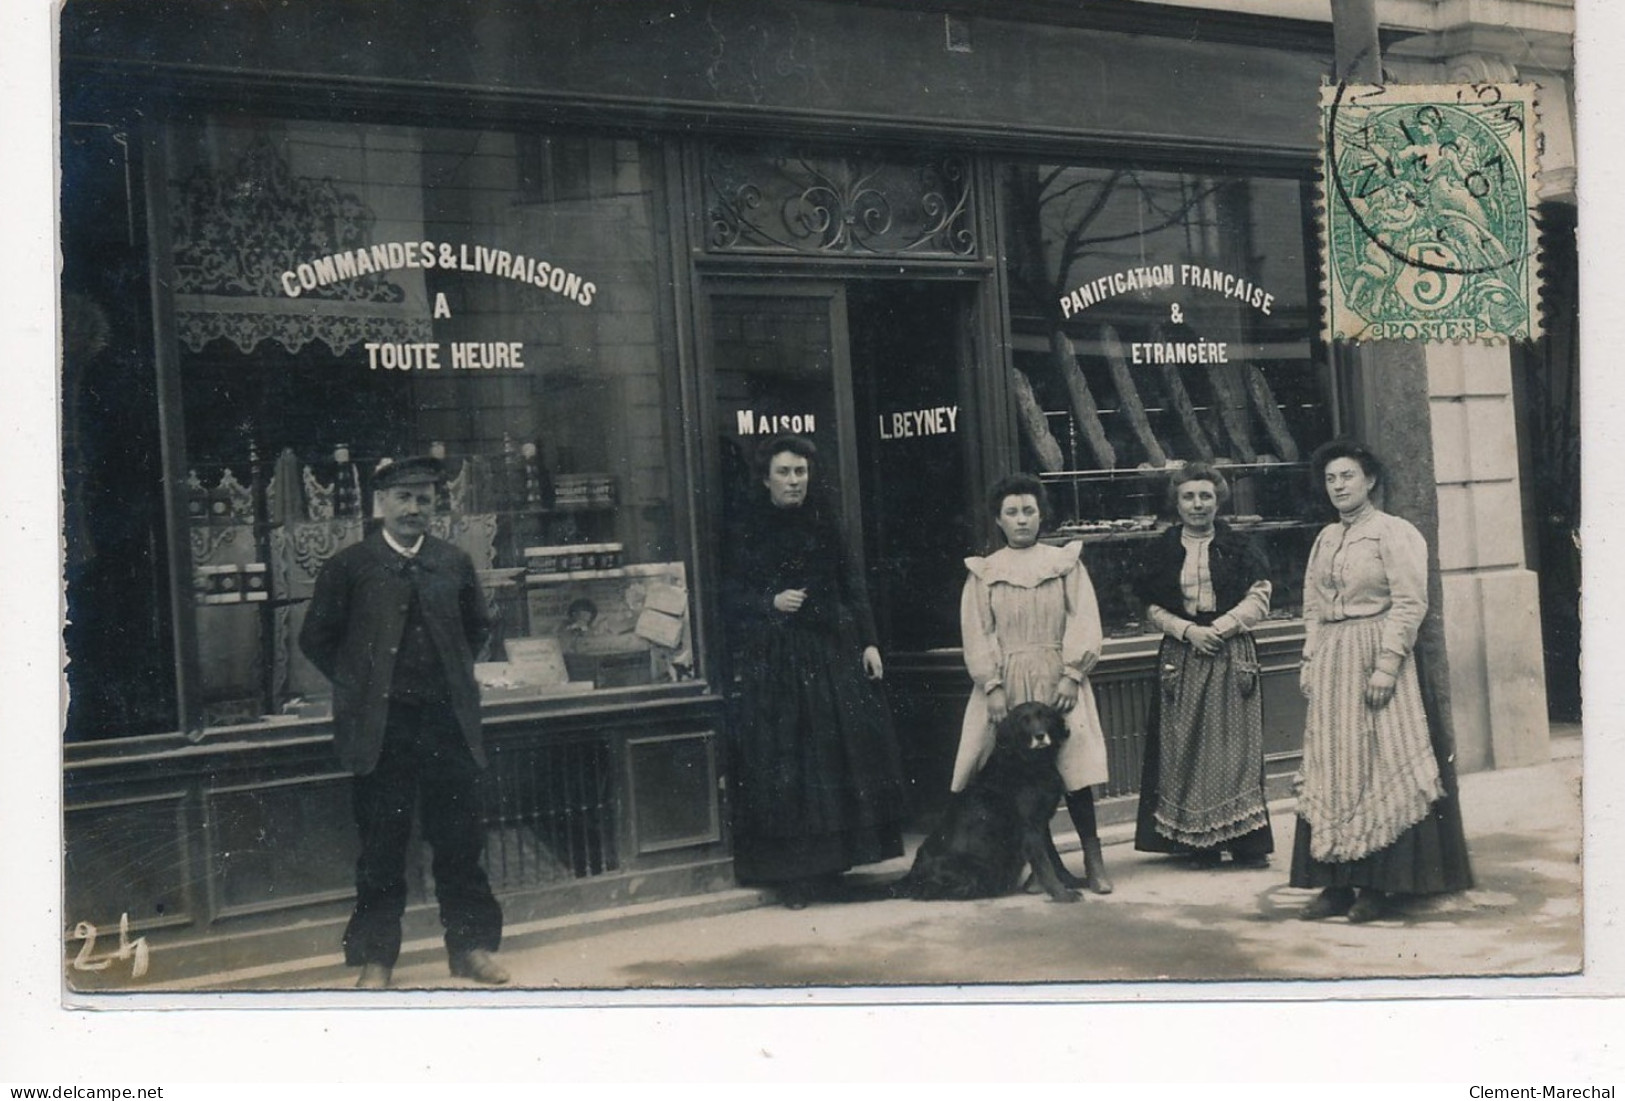 NANTERRE : Boulangerie, Commandes & Livraison à Toute Heure, Maison L. Beyney - Etat - Nanterre